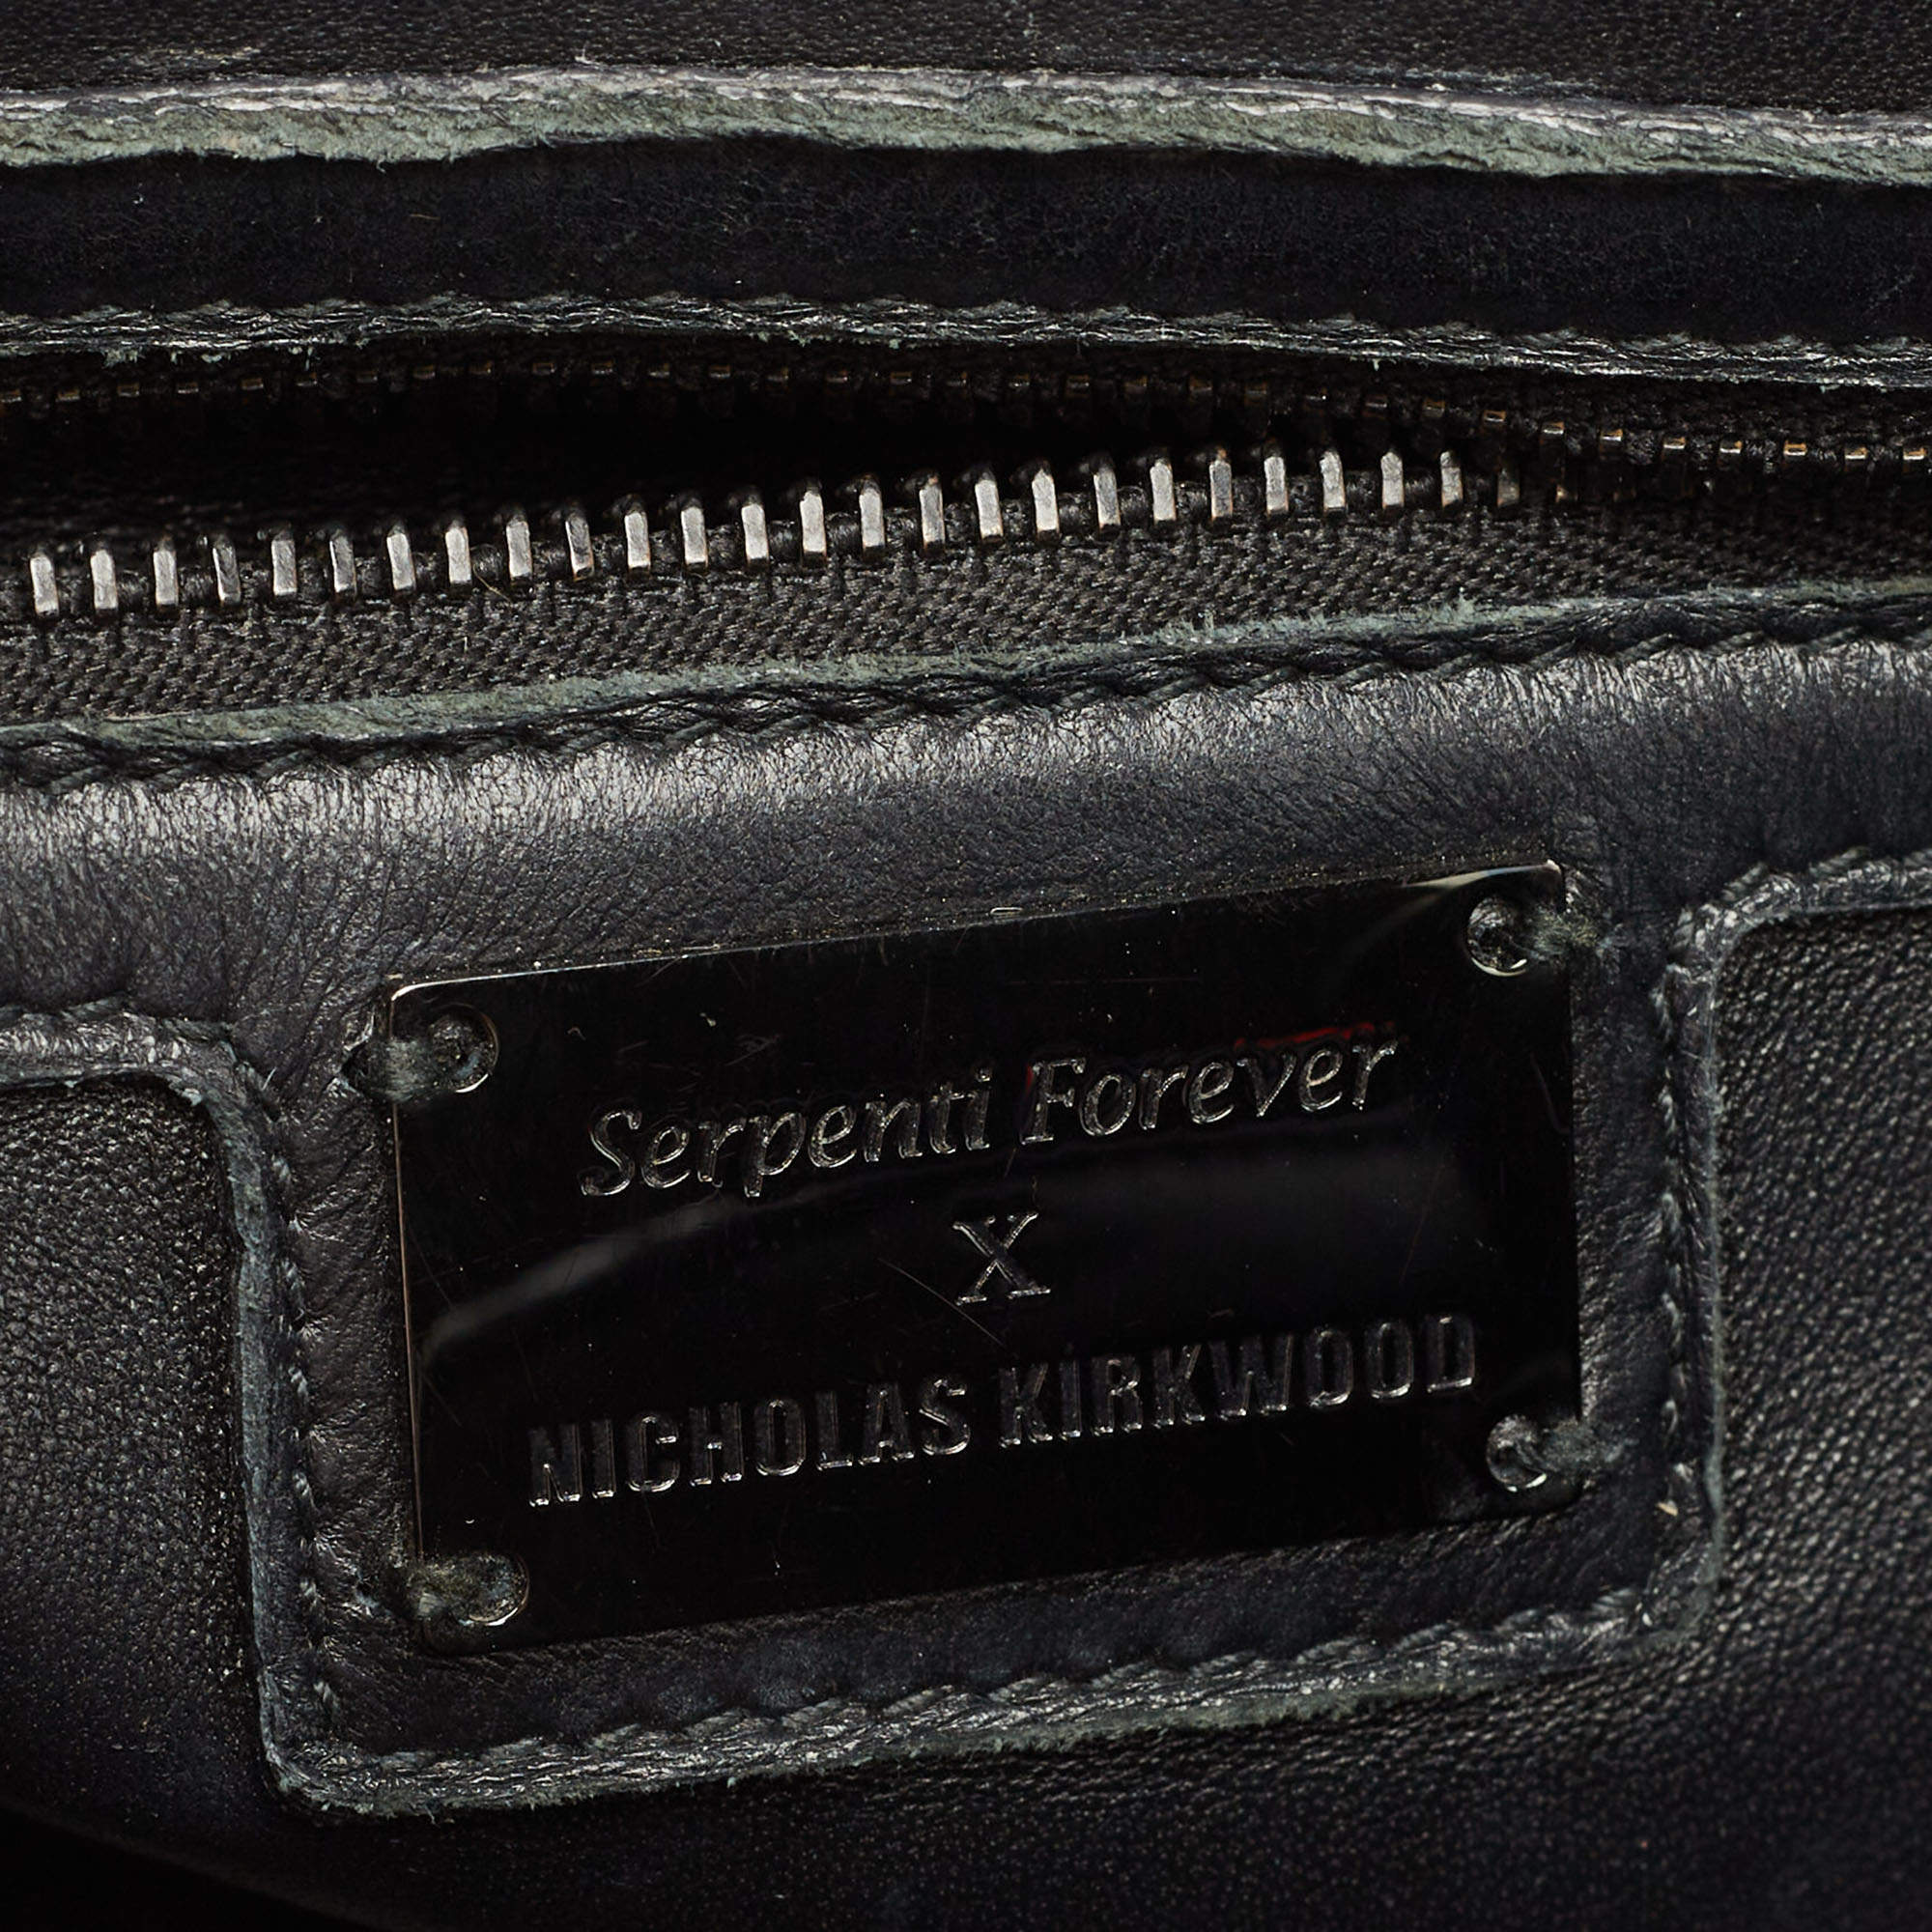 Bulgari's Serpenti bags get a sprinkle of Nicholas Kirkwood's magic